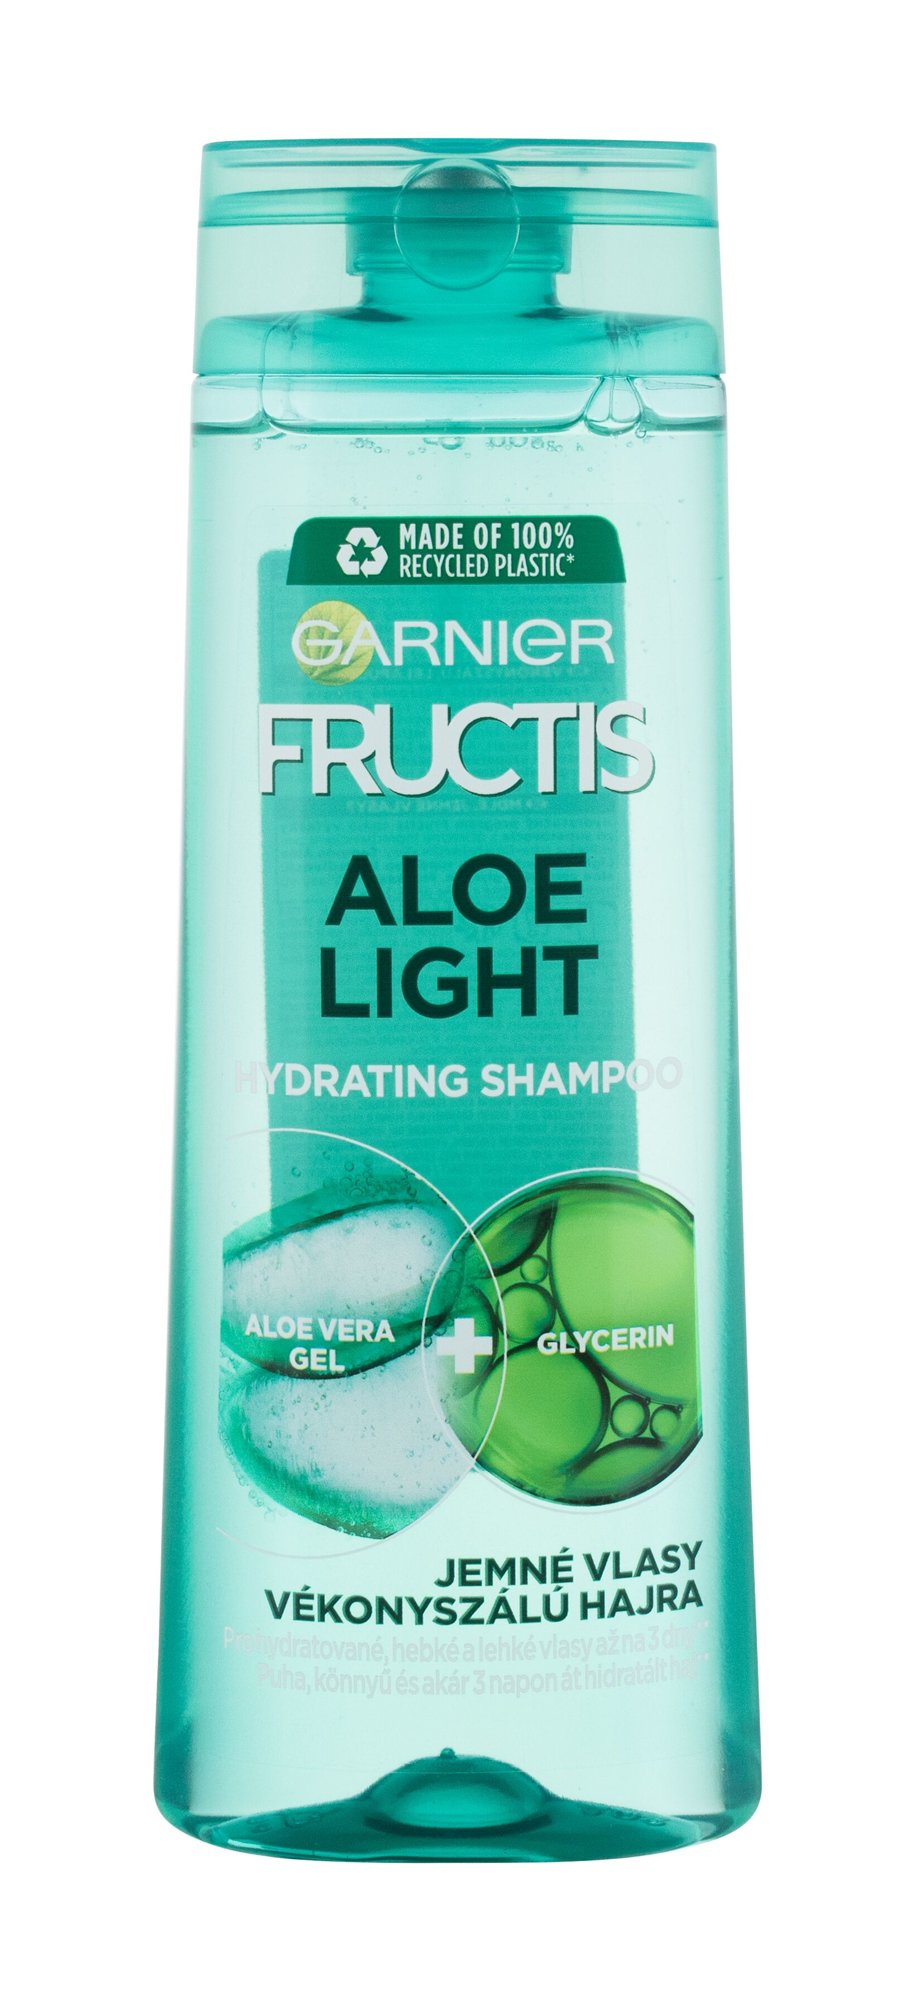 Garnier Fructis Aloe Light šampūnas